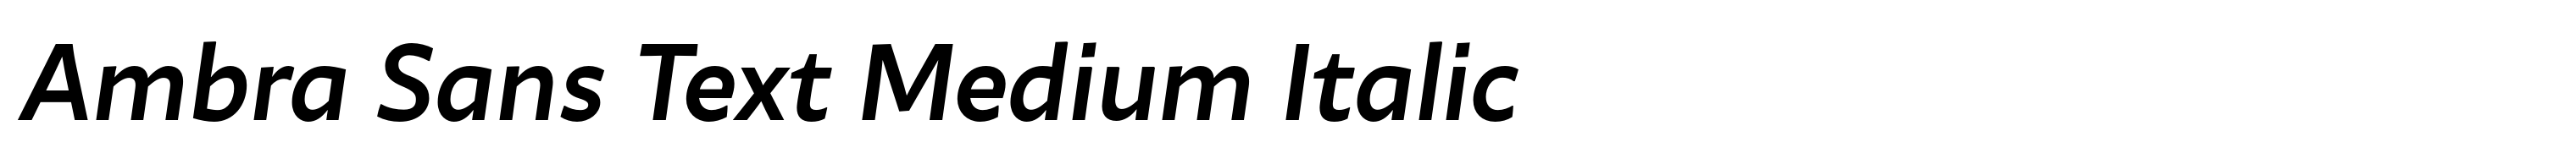 Ambra Sans Text Medium Italic